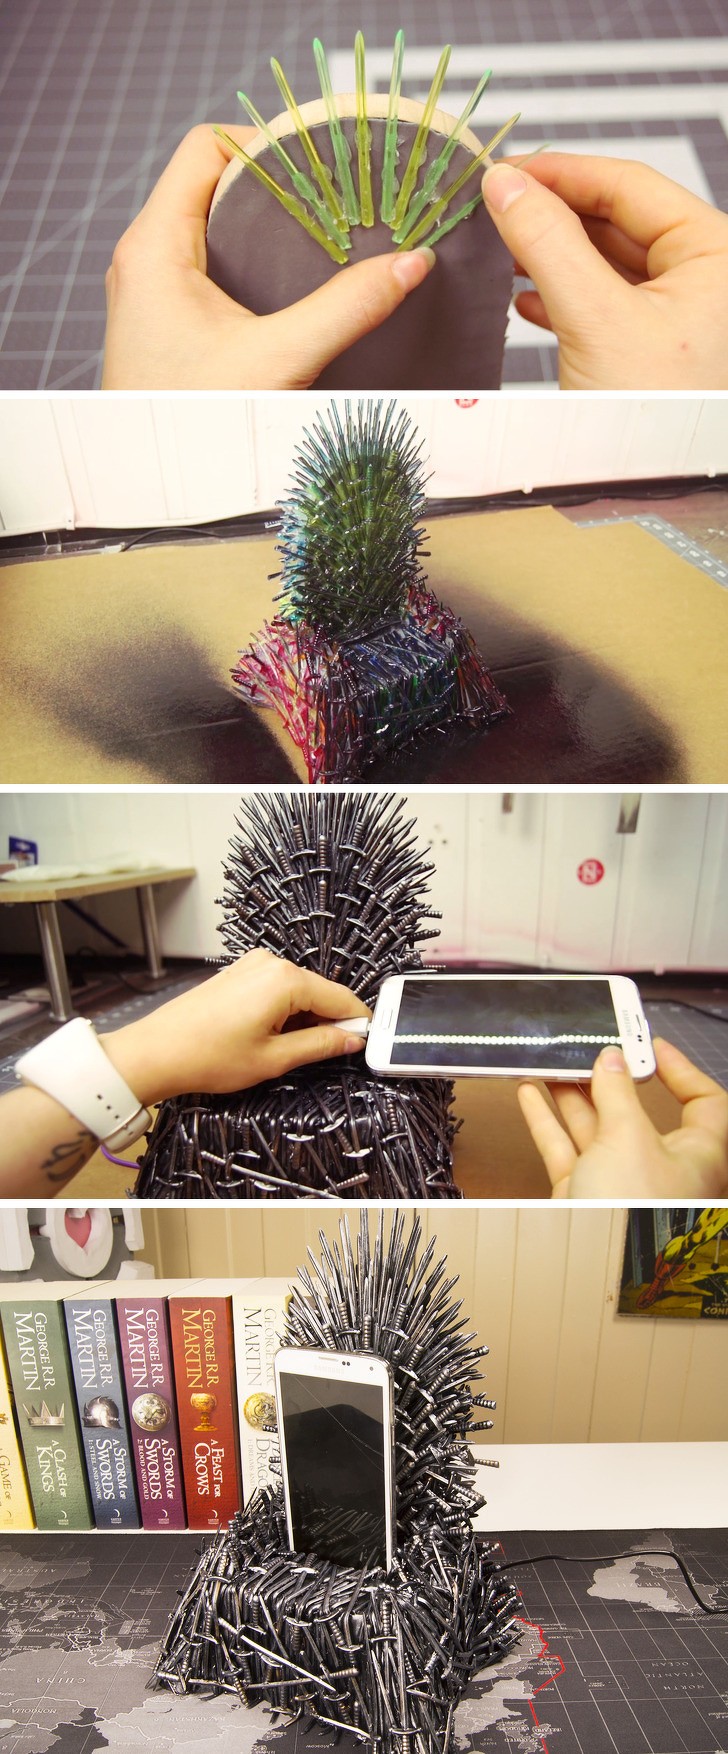 Um trono para o seu smartphone